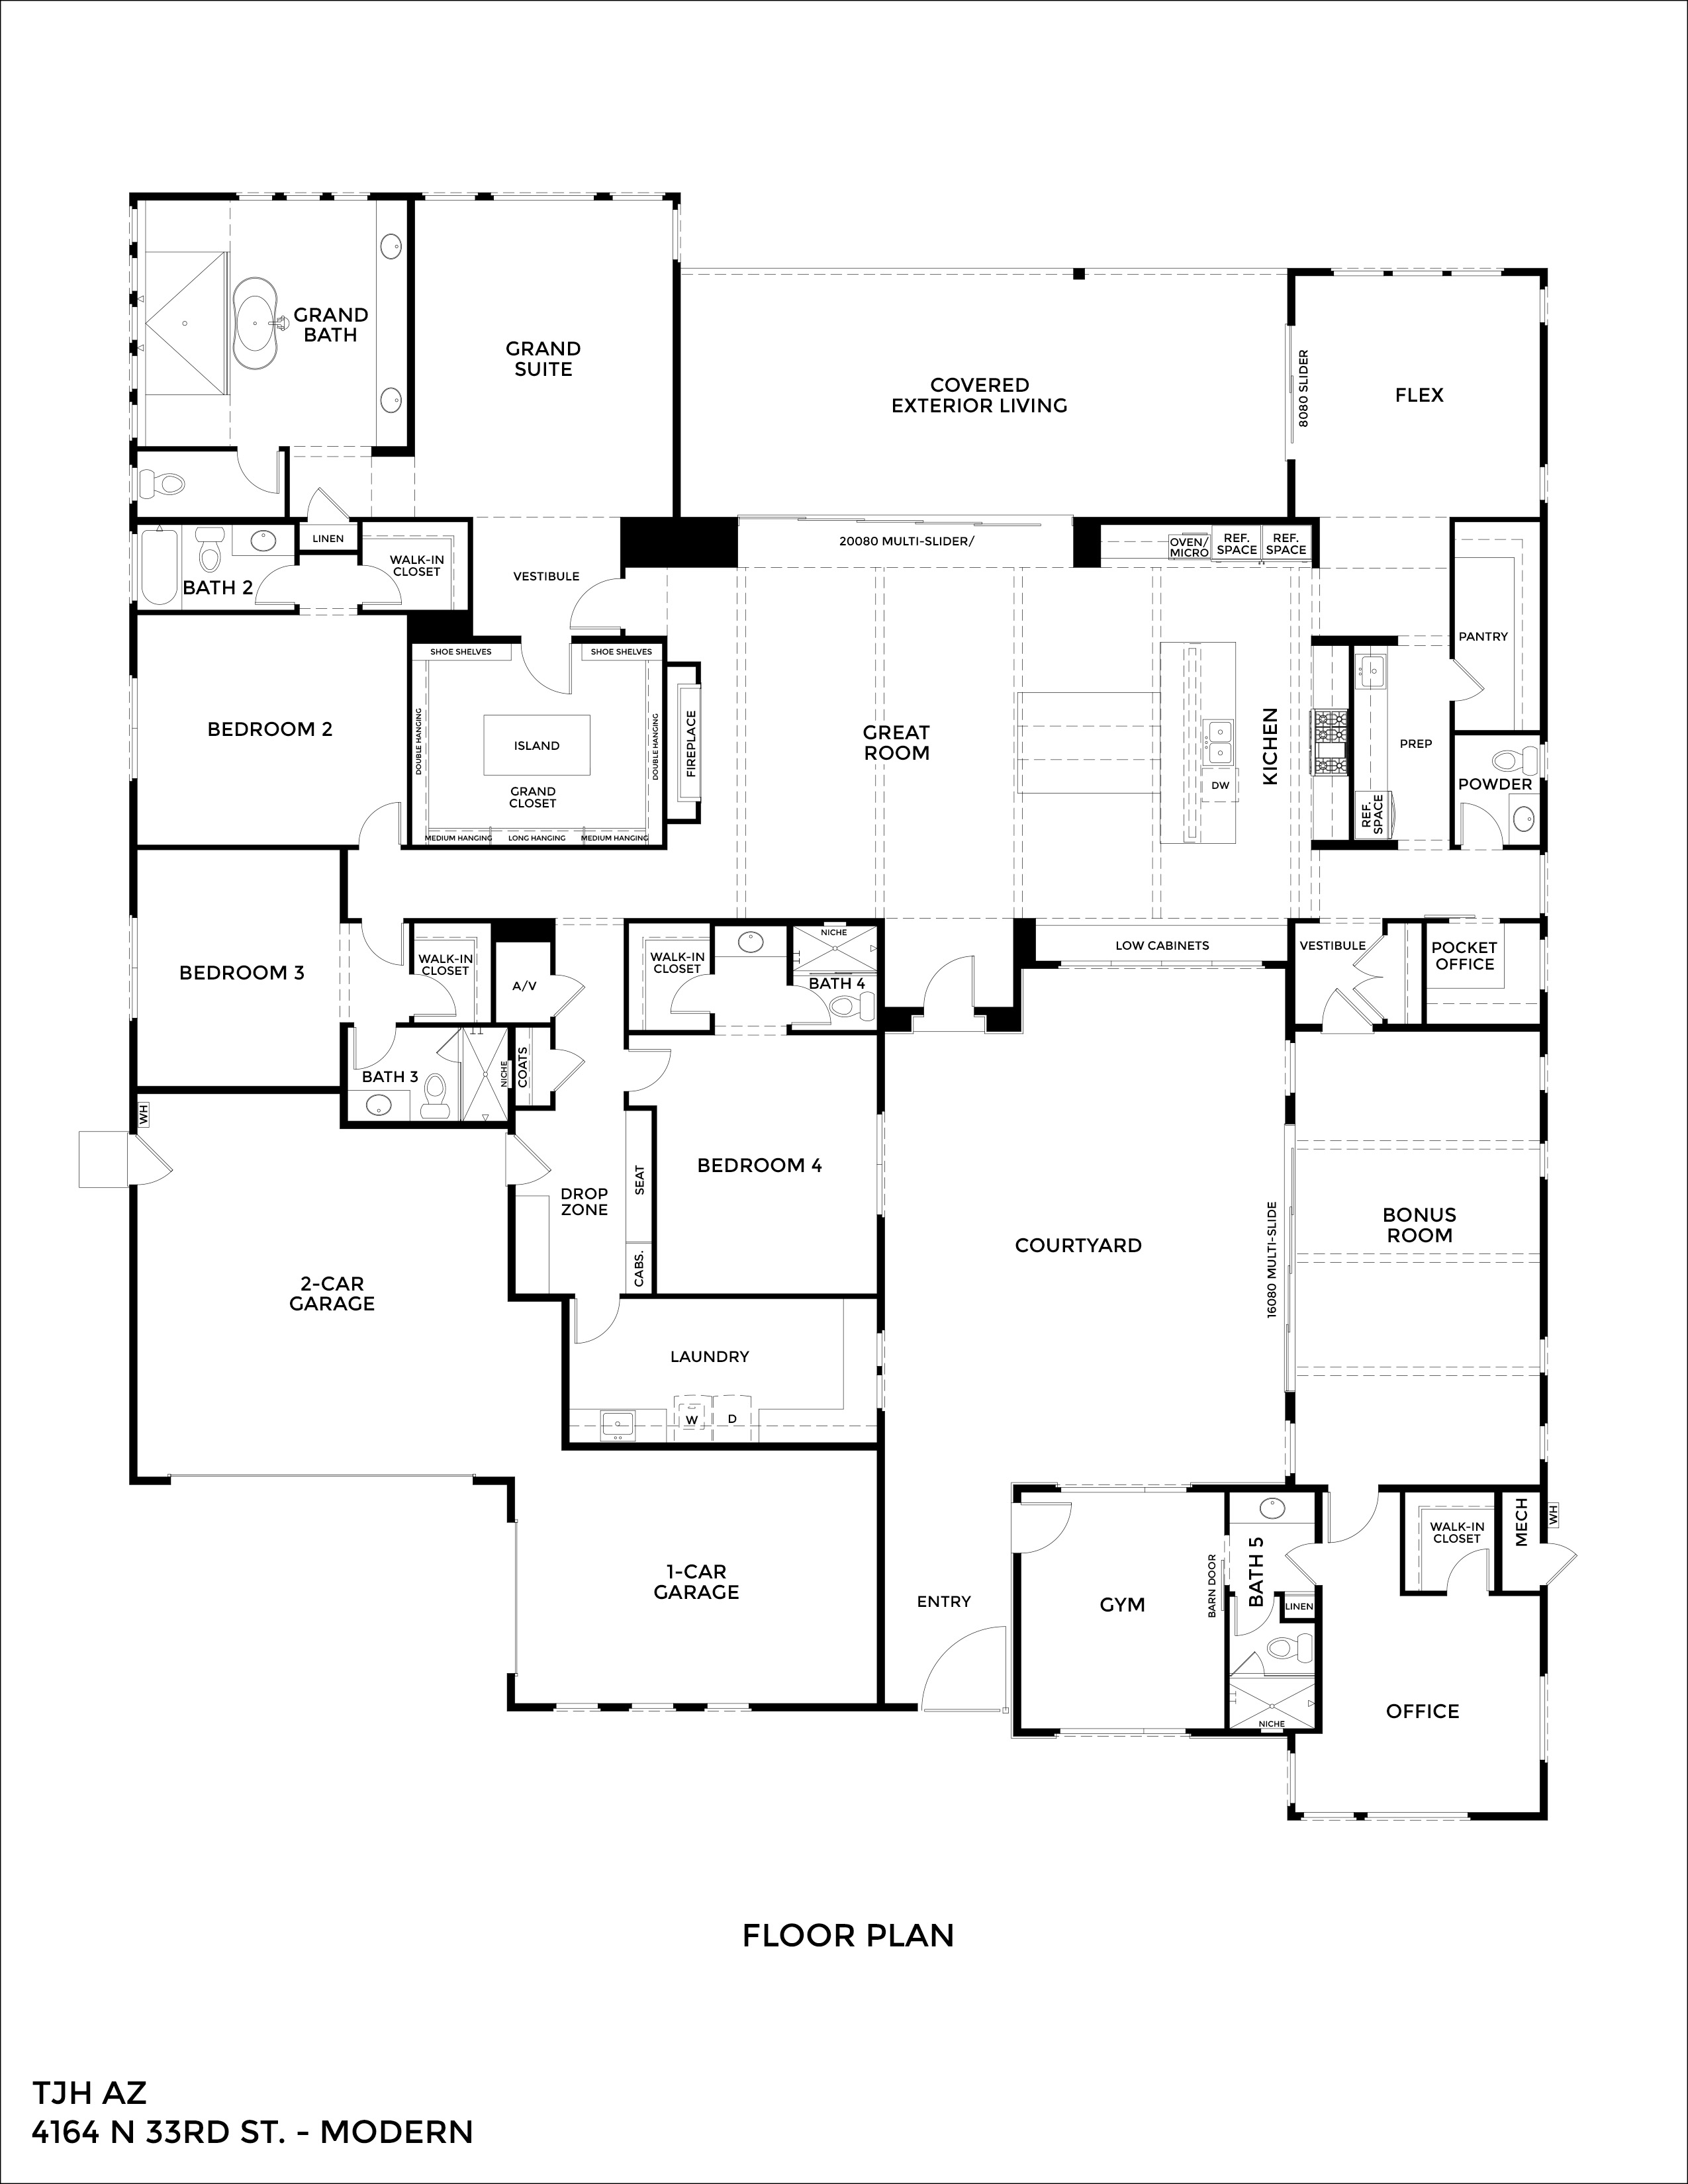 Floorplan 01. 4164 N 33rd St.jpg for 4164 N 33rd Street